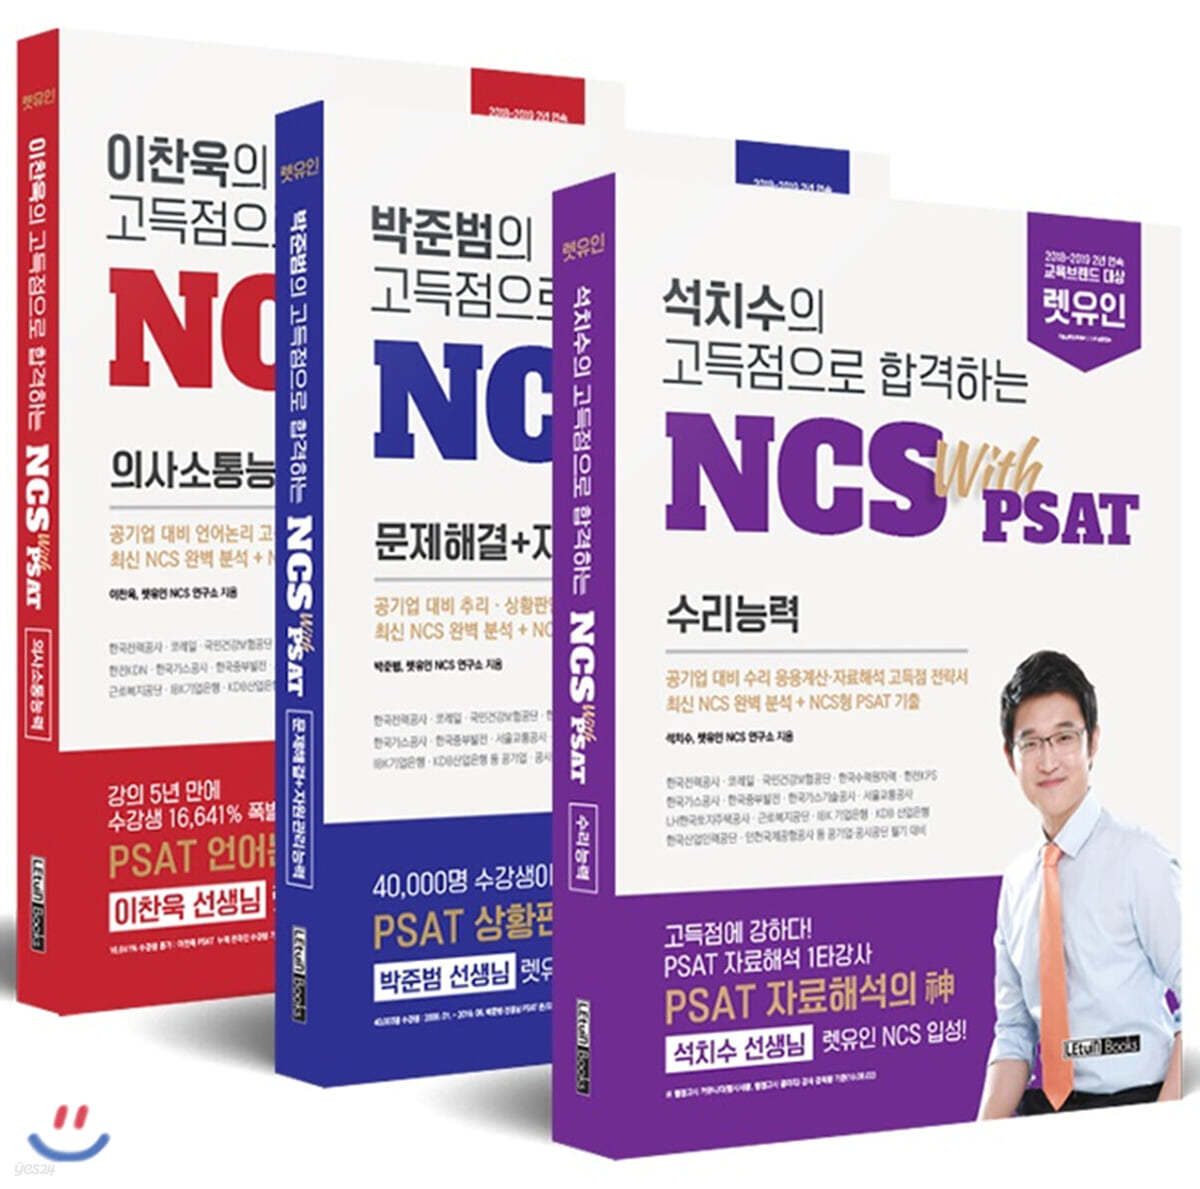 고득점으로 합격하는 NCS with PSAT 세트